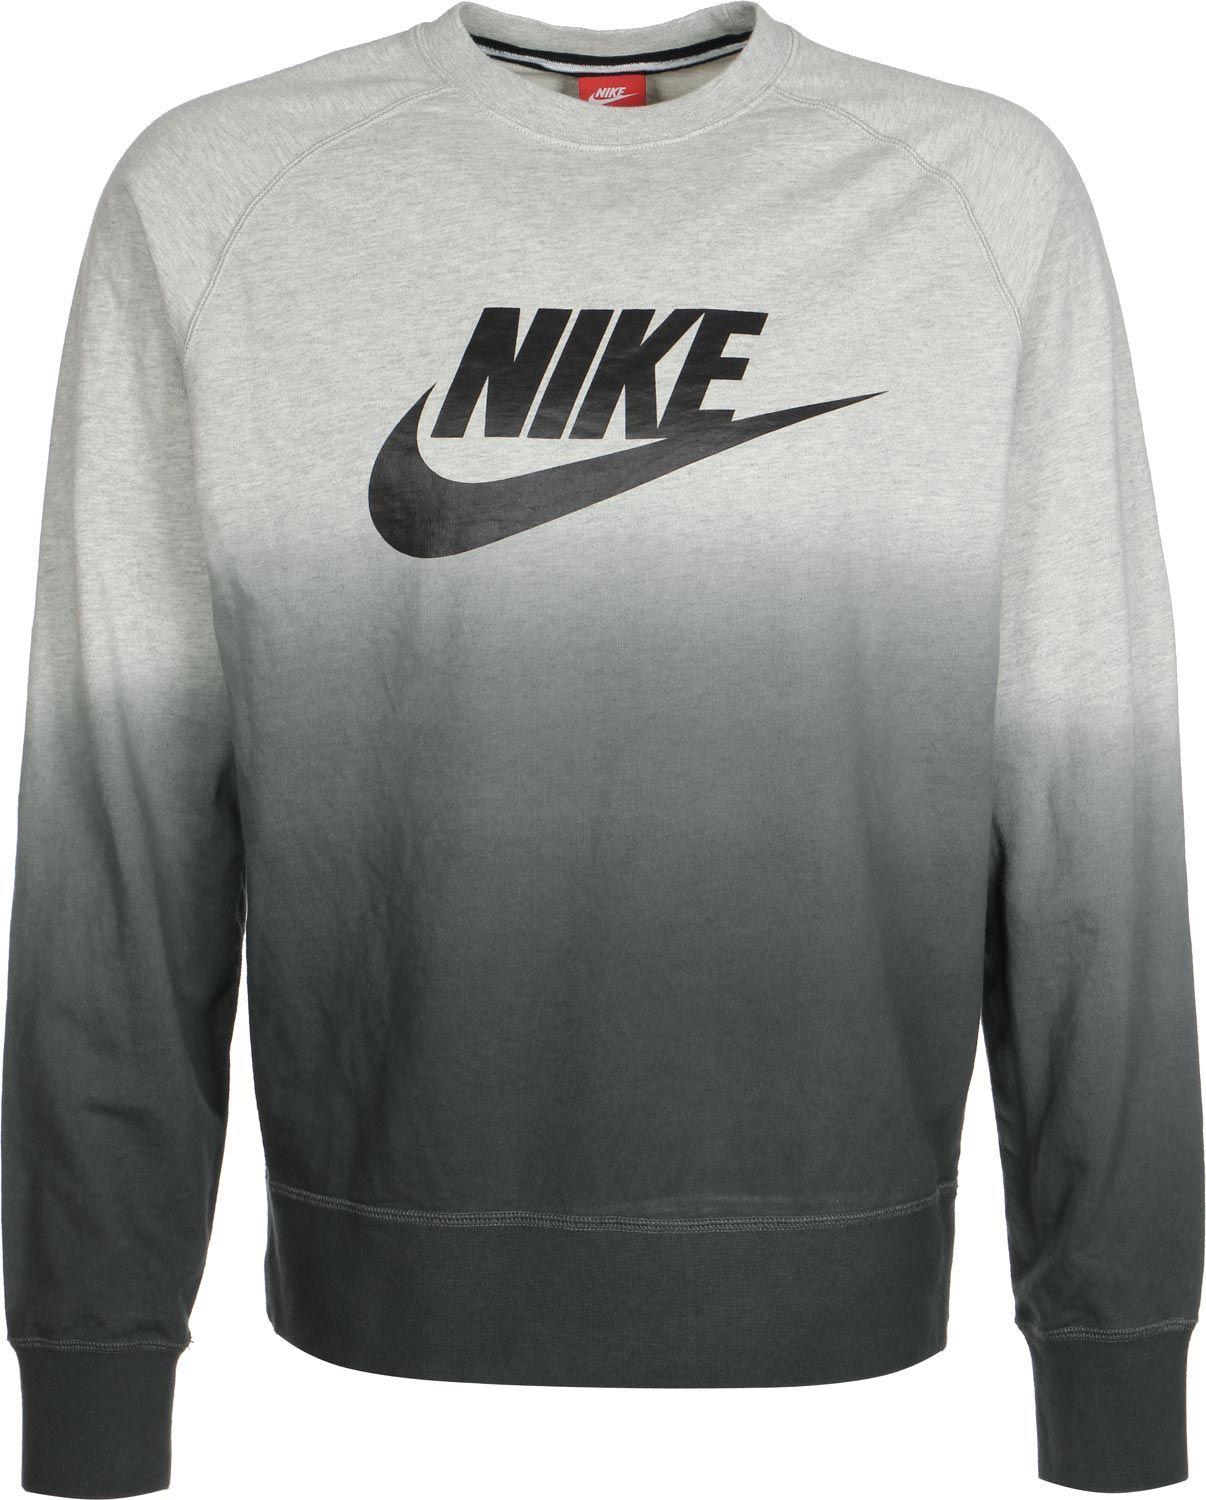 Fade Nike Logo - Nike AW77 FT Crew-Fade sweater grey heather | WeAre Shop